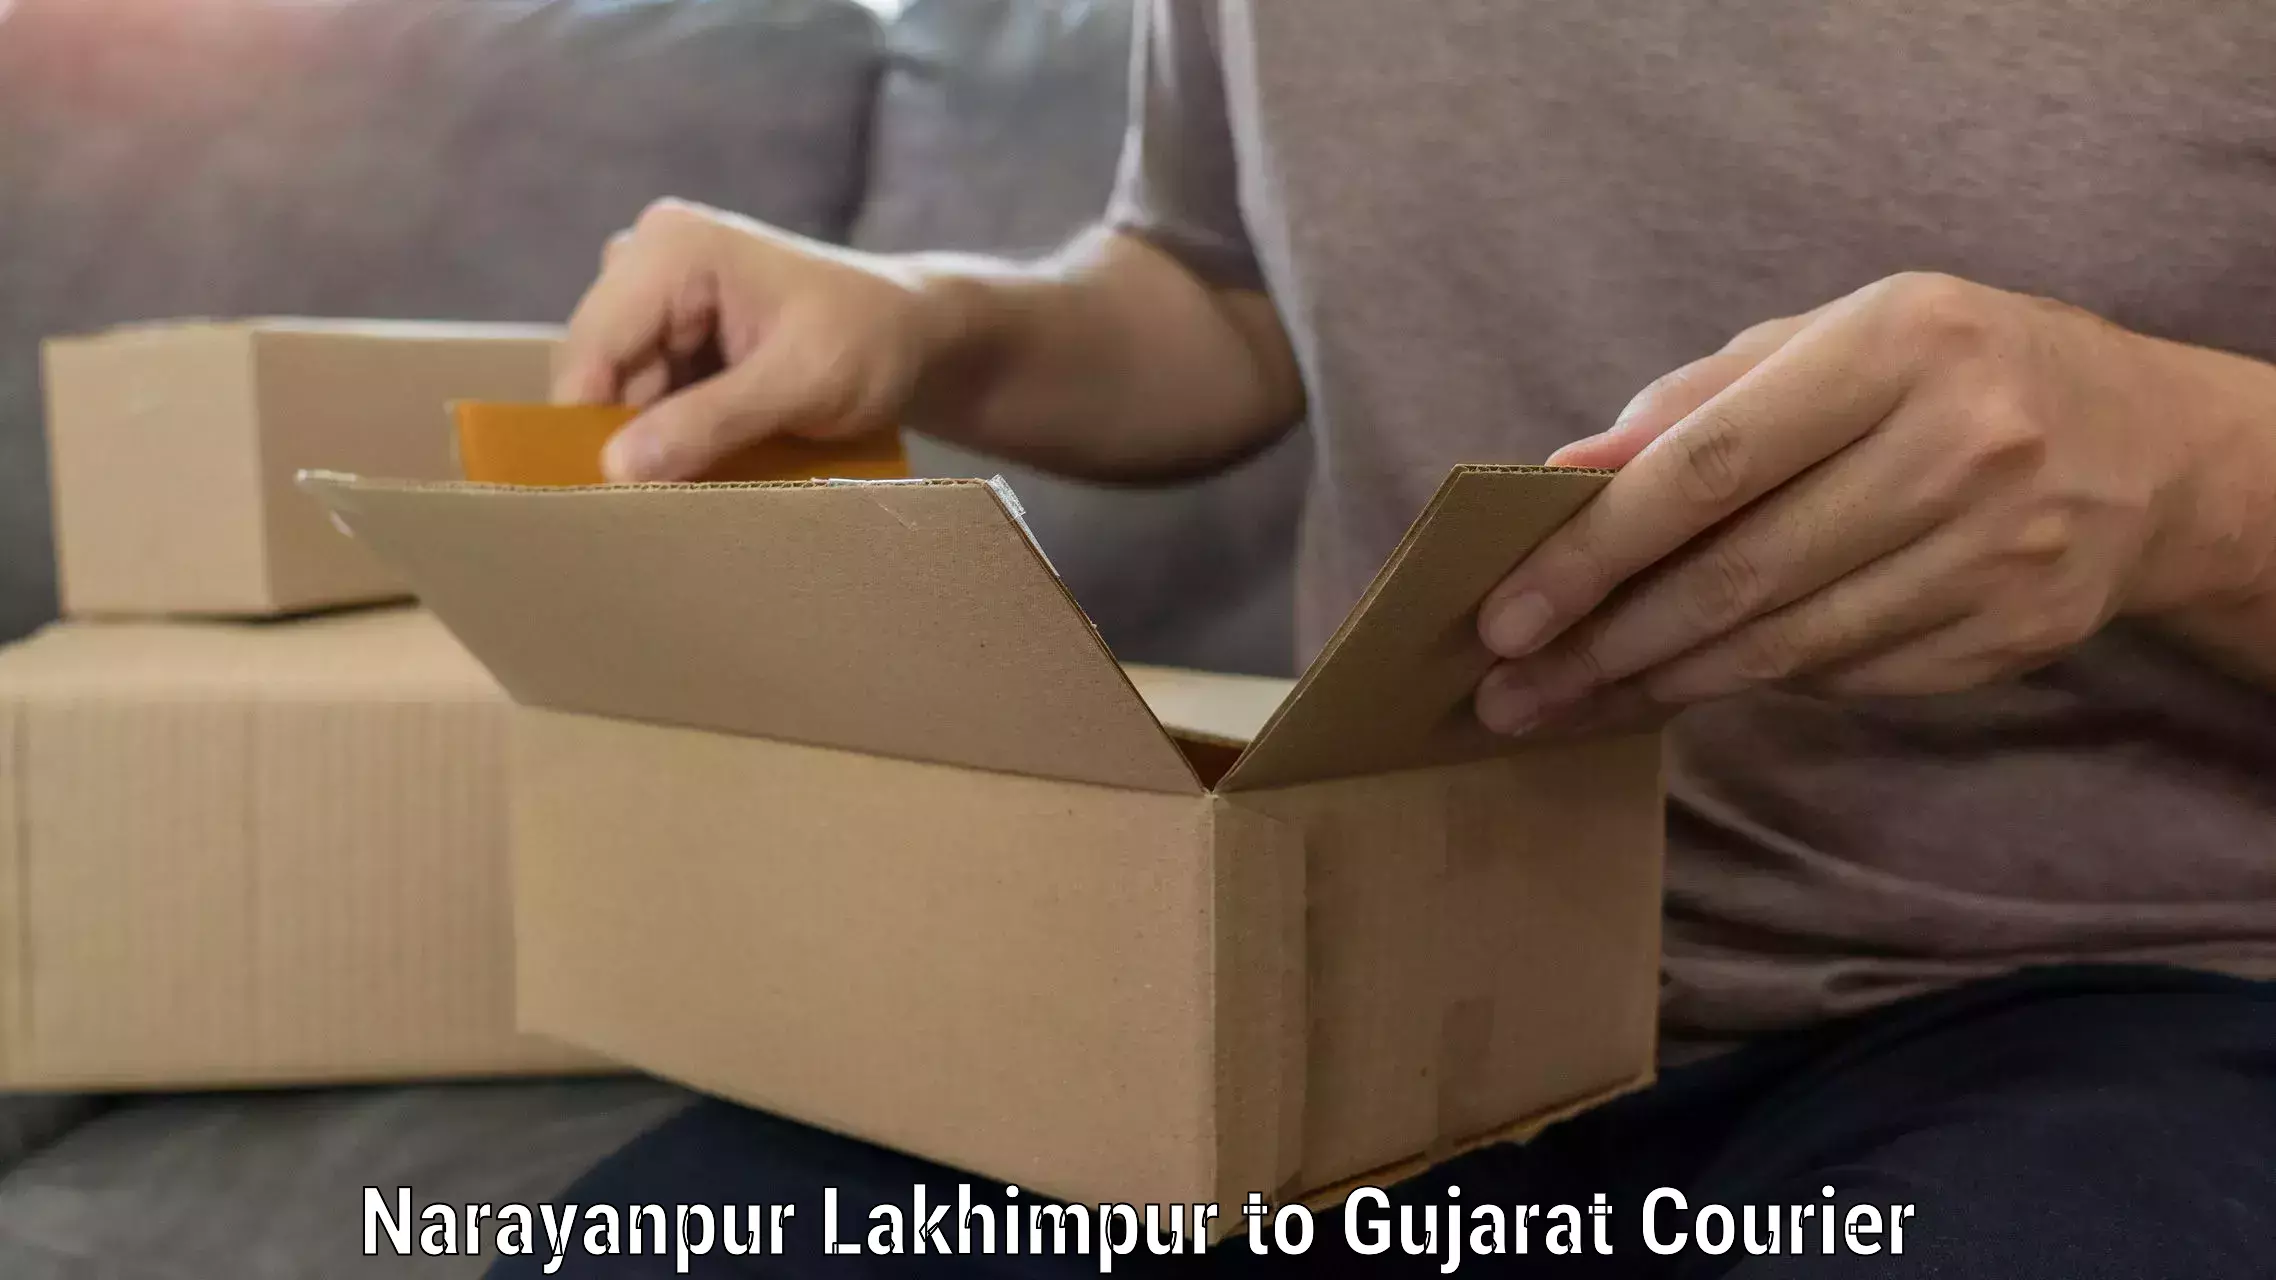 Furniture delivery service Narayanpur Lakhimpur to IIT Gandhi Nagar